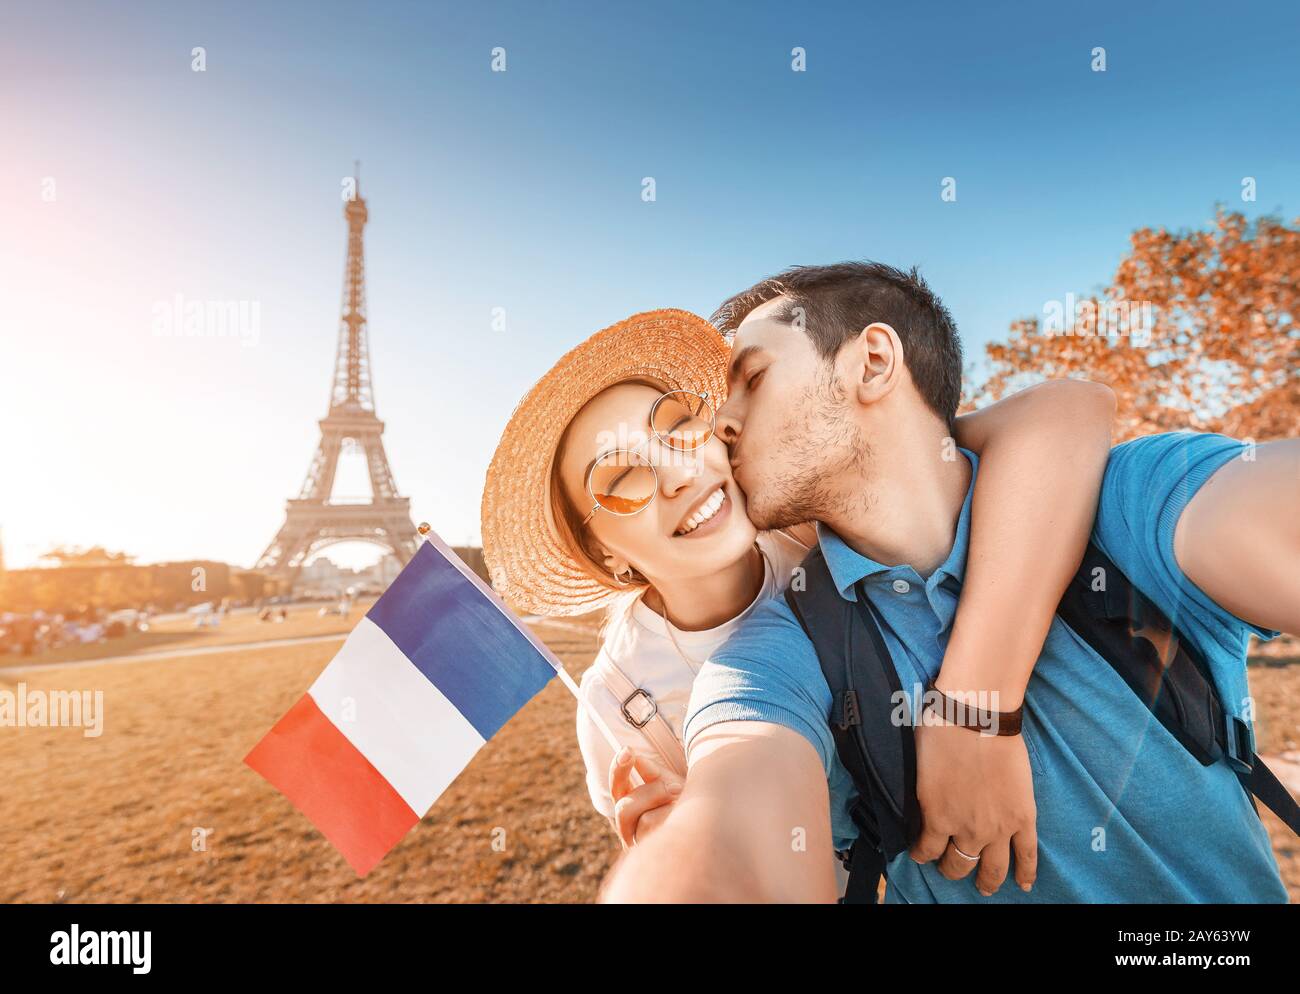 Couple mixte de course amoureux embrassant et prenant selfie avec drapeau français et tour Eiffel en arrière-plan. Voyage de lune de miel en France et Paris concept Banque D'Images